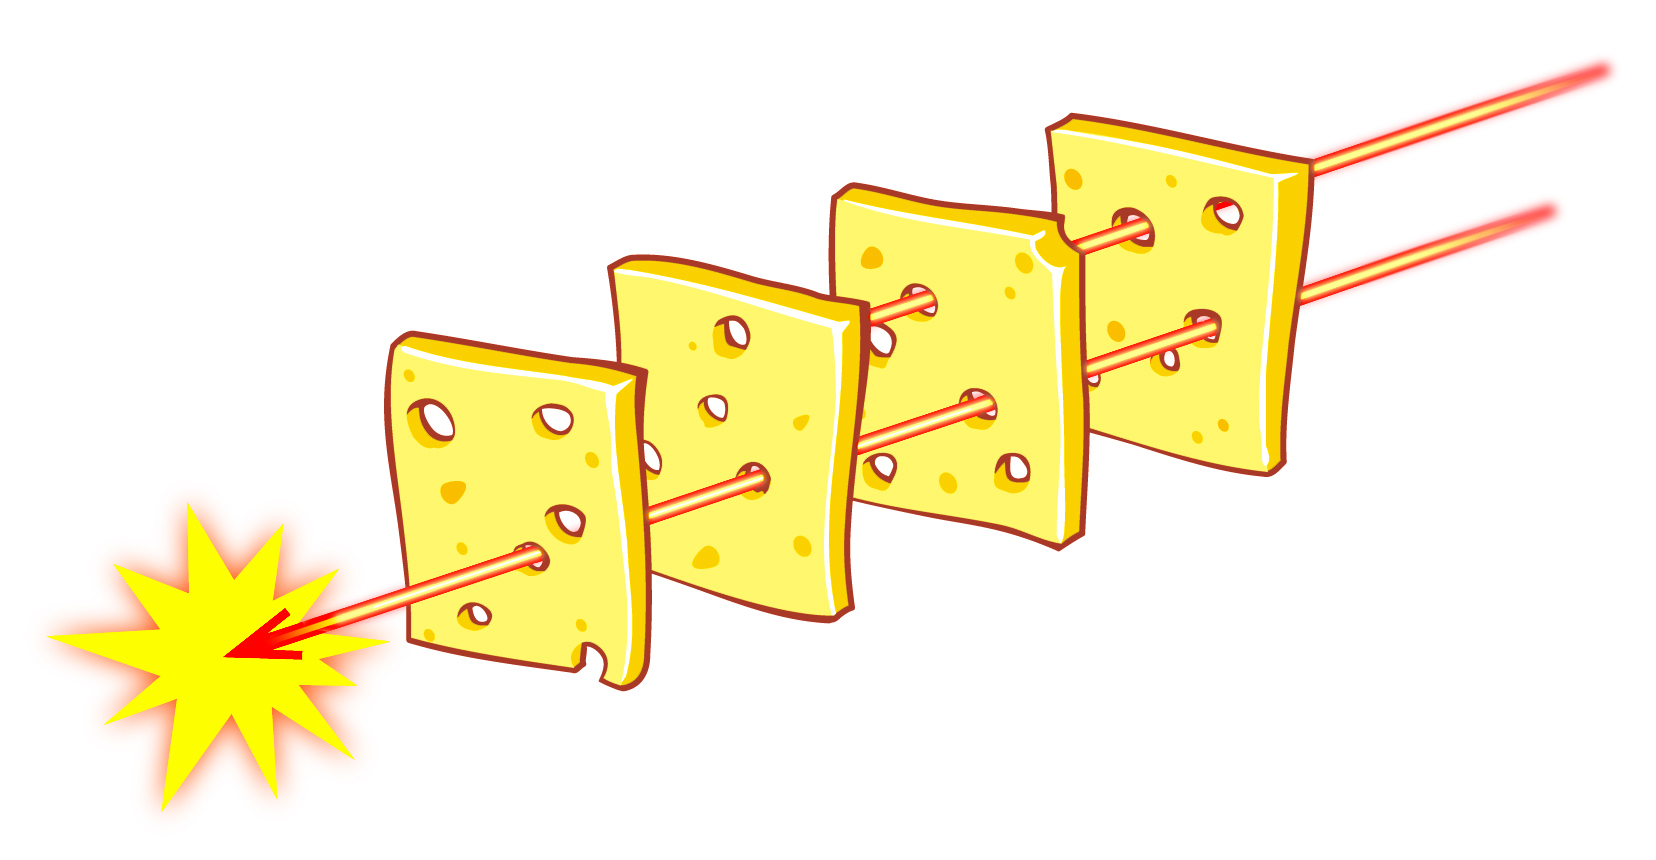 フリーイラスト素材 スイスチーズモデル ４枚組